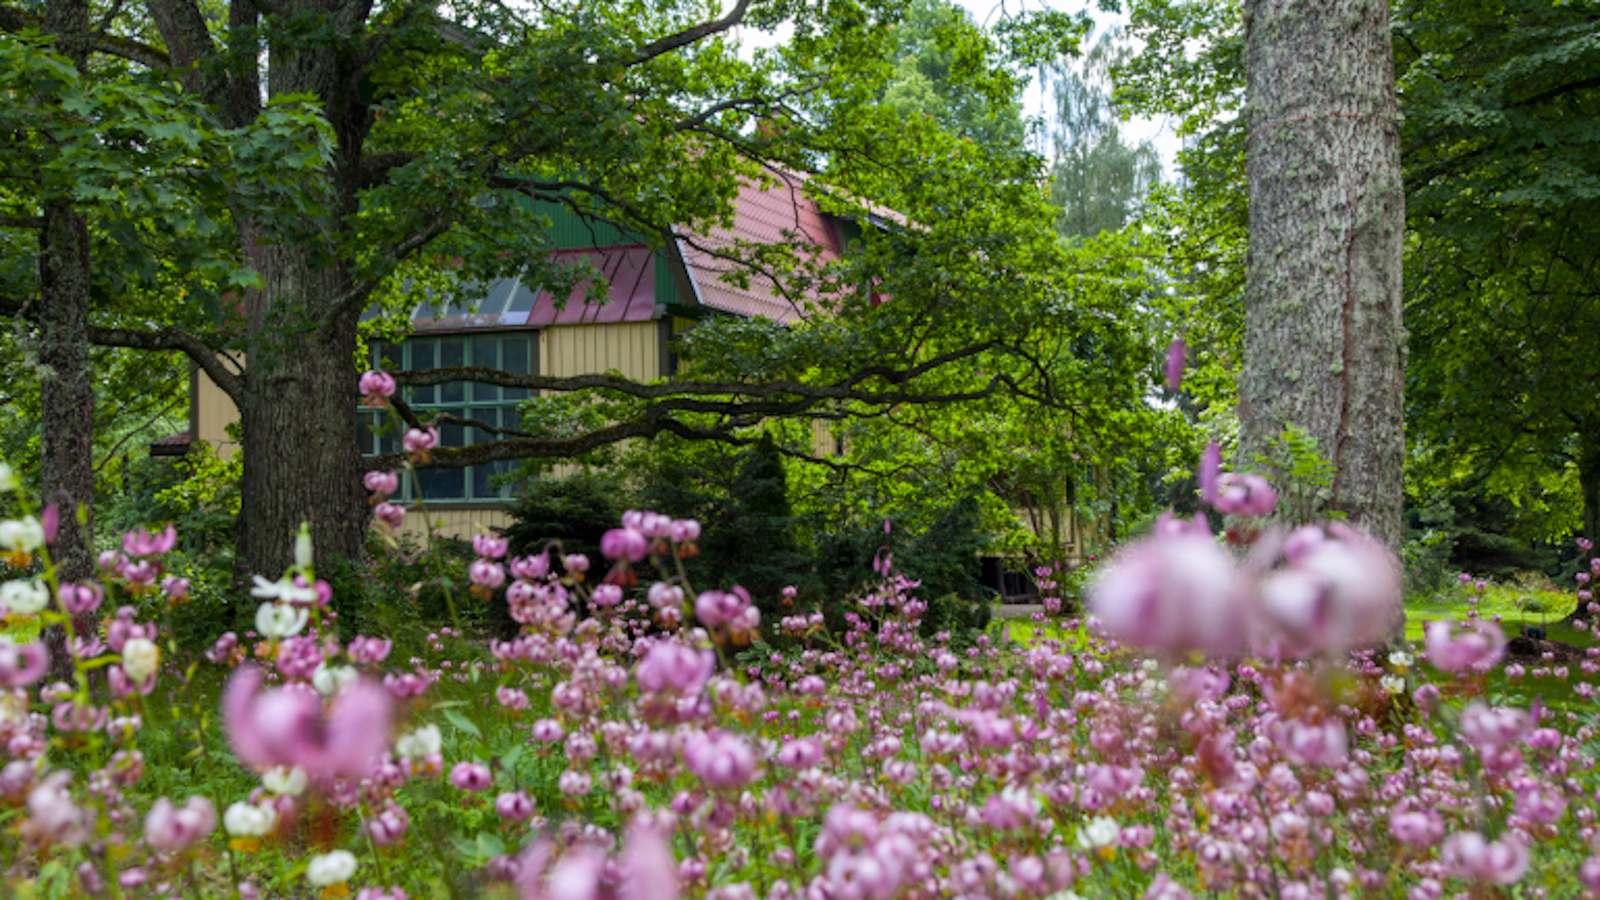 Kuvassa on mansardikattoinen Järnefeltien talo Suviranta.  Sen puutarha on etualalla ja talo näkyy taaempana.  Kuva on otettu kesällä.